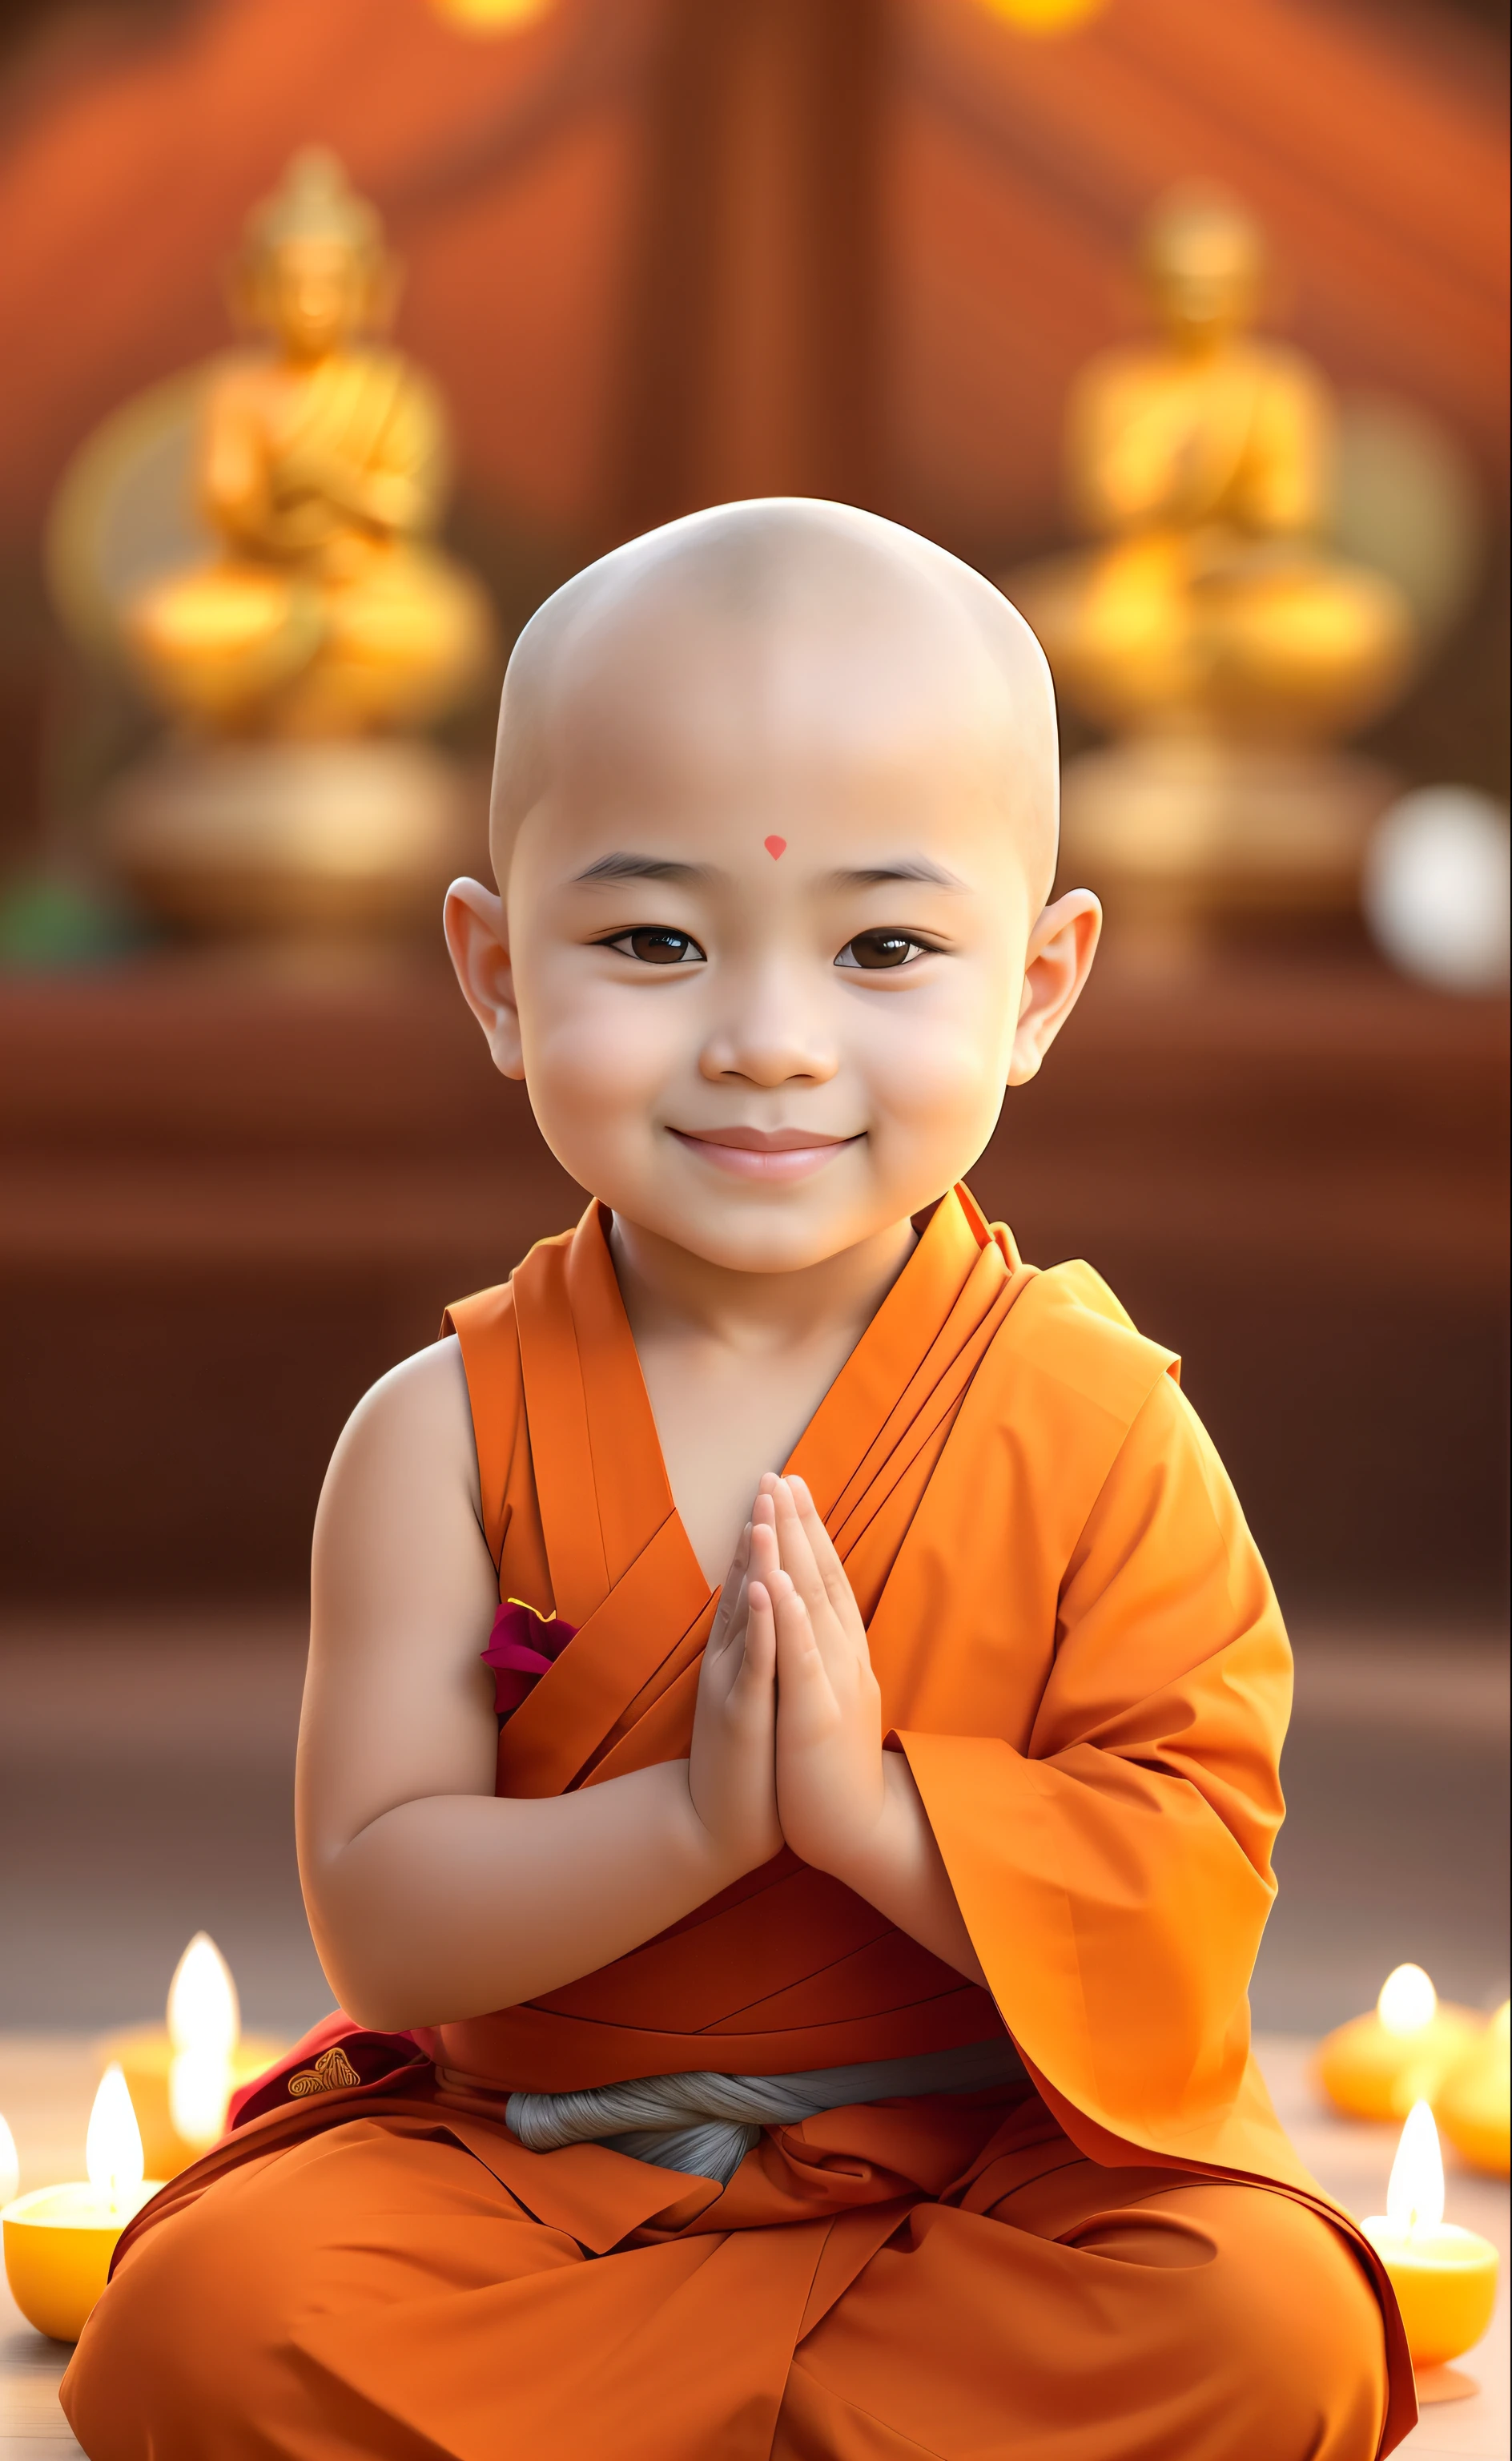 لقطة مقربة للجلوس في وضعية التأمل, بوذي, buddhist راهب, البوذية, راهب clothes, ابتسامة هادئة, راهب, راهب meditation, شاشة التوقف, طفولي كبير الثديين, لطيف لطيف, نيفانه شانثارا, فتى لطيف, الاطفال سعيد, صورة الملف الشخصي, التعبير الهادئ, ابتسامة بريئة, جميل محبب, لطيف جميل, سلام, لوحة رقمية جميلة, التايلاندية